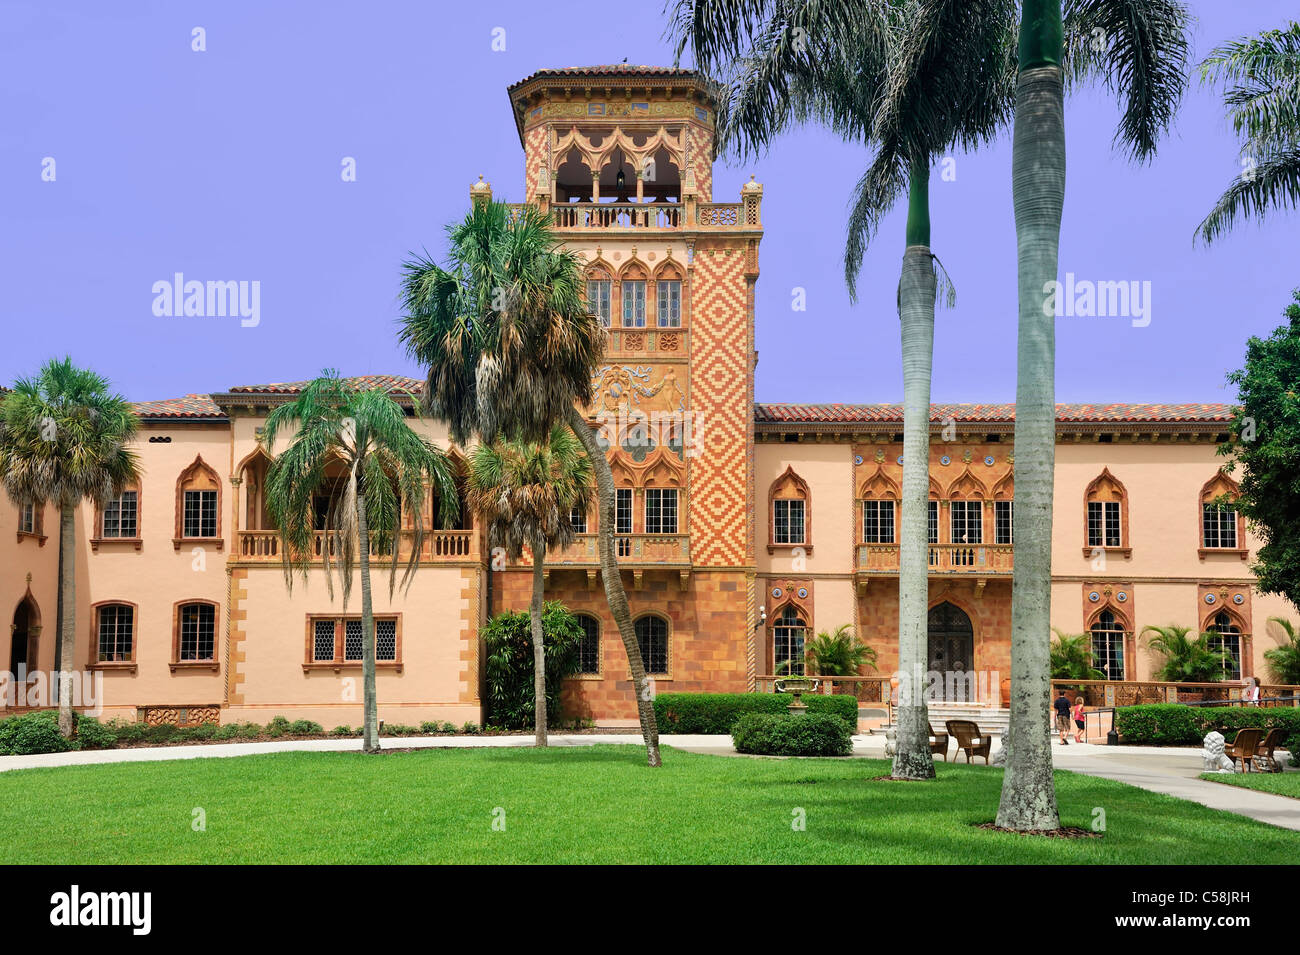 Musée, la baie de Sarasota, Ringling Mansion, John et Mable Ringling Museum of Art, Sarasota, Floride, USA, United States, Amérique, m Banque D'Images